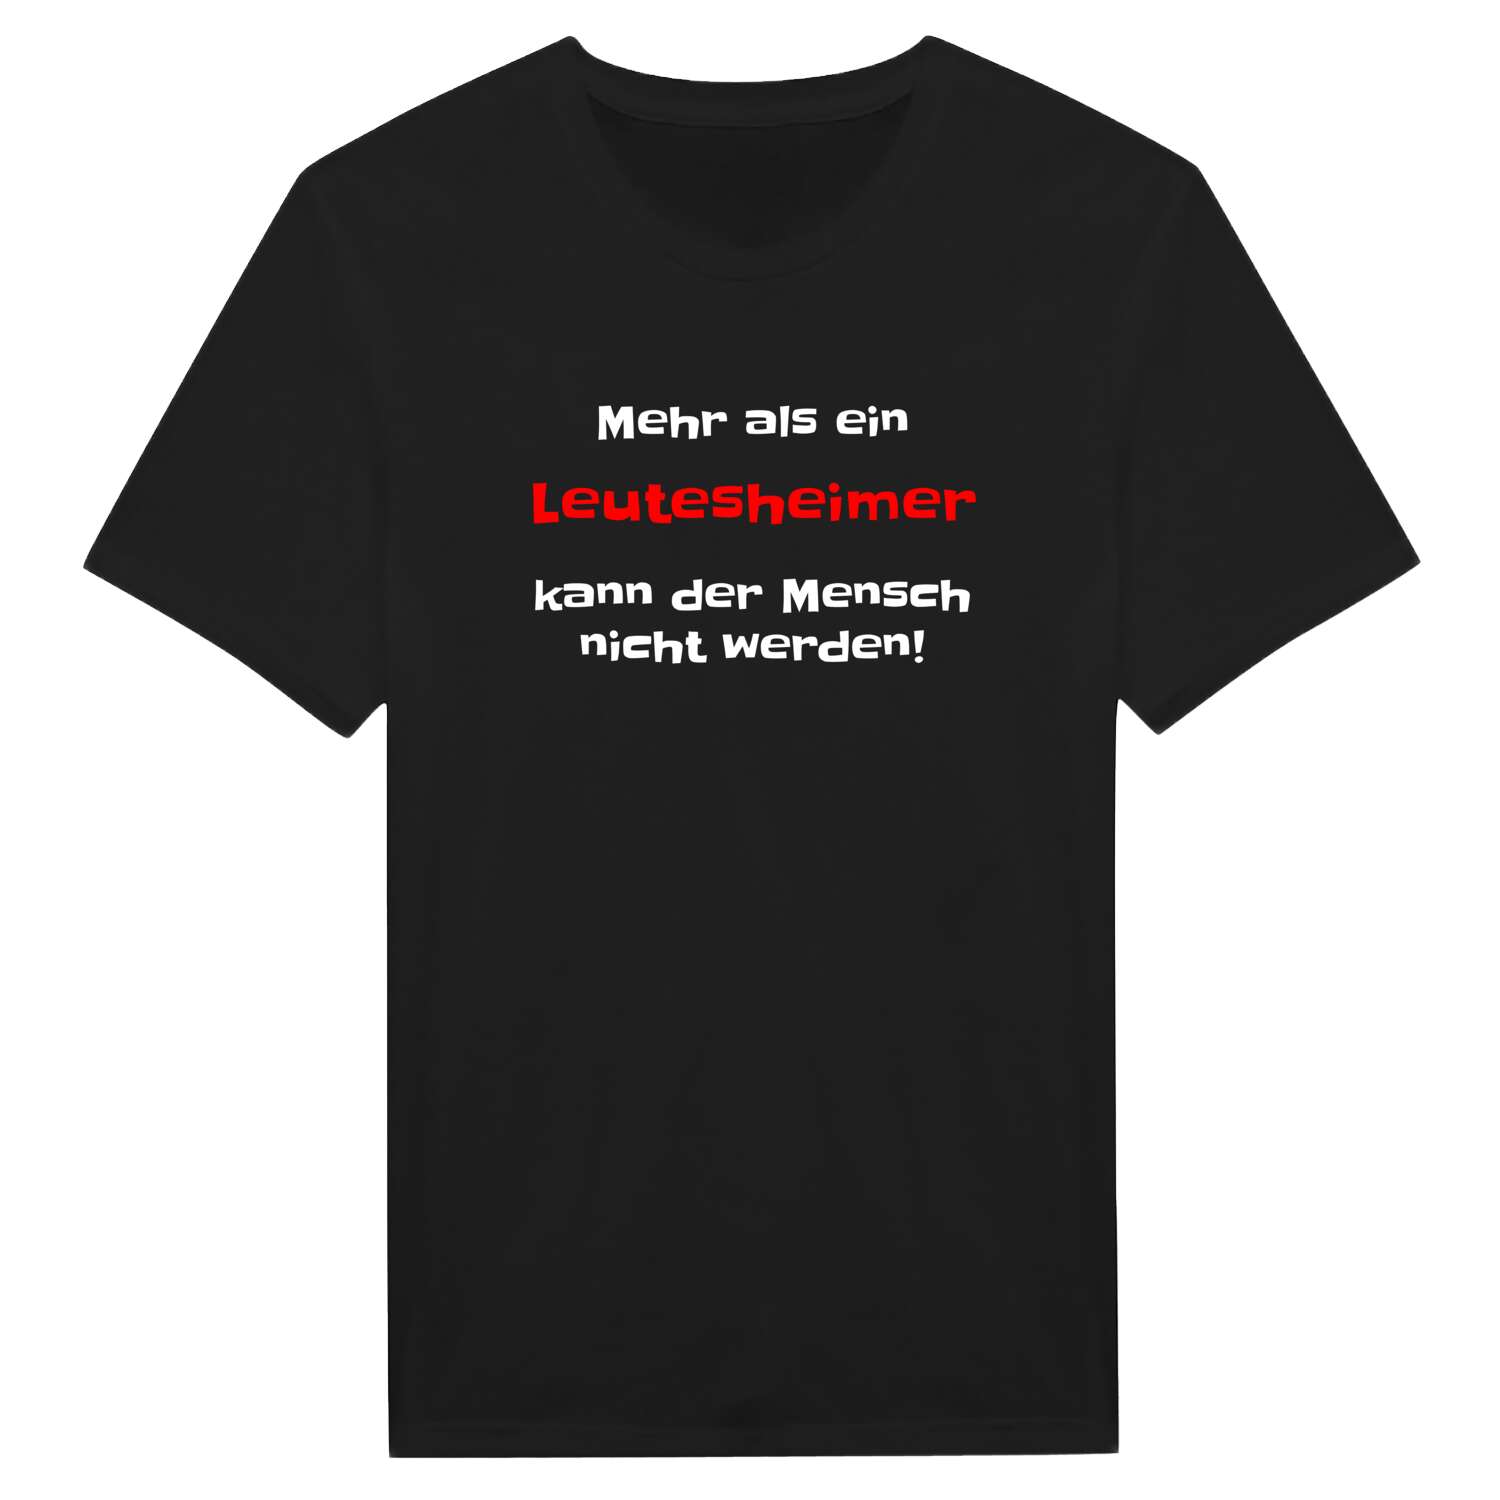 Leutesheim T-Shirt »Mehr als ein«